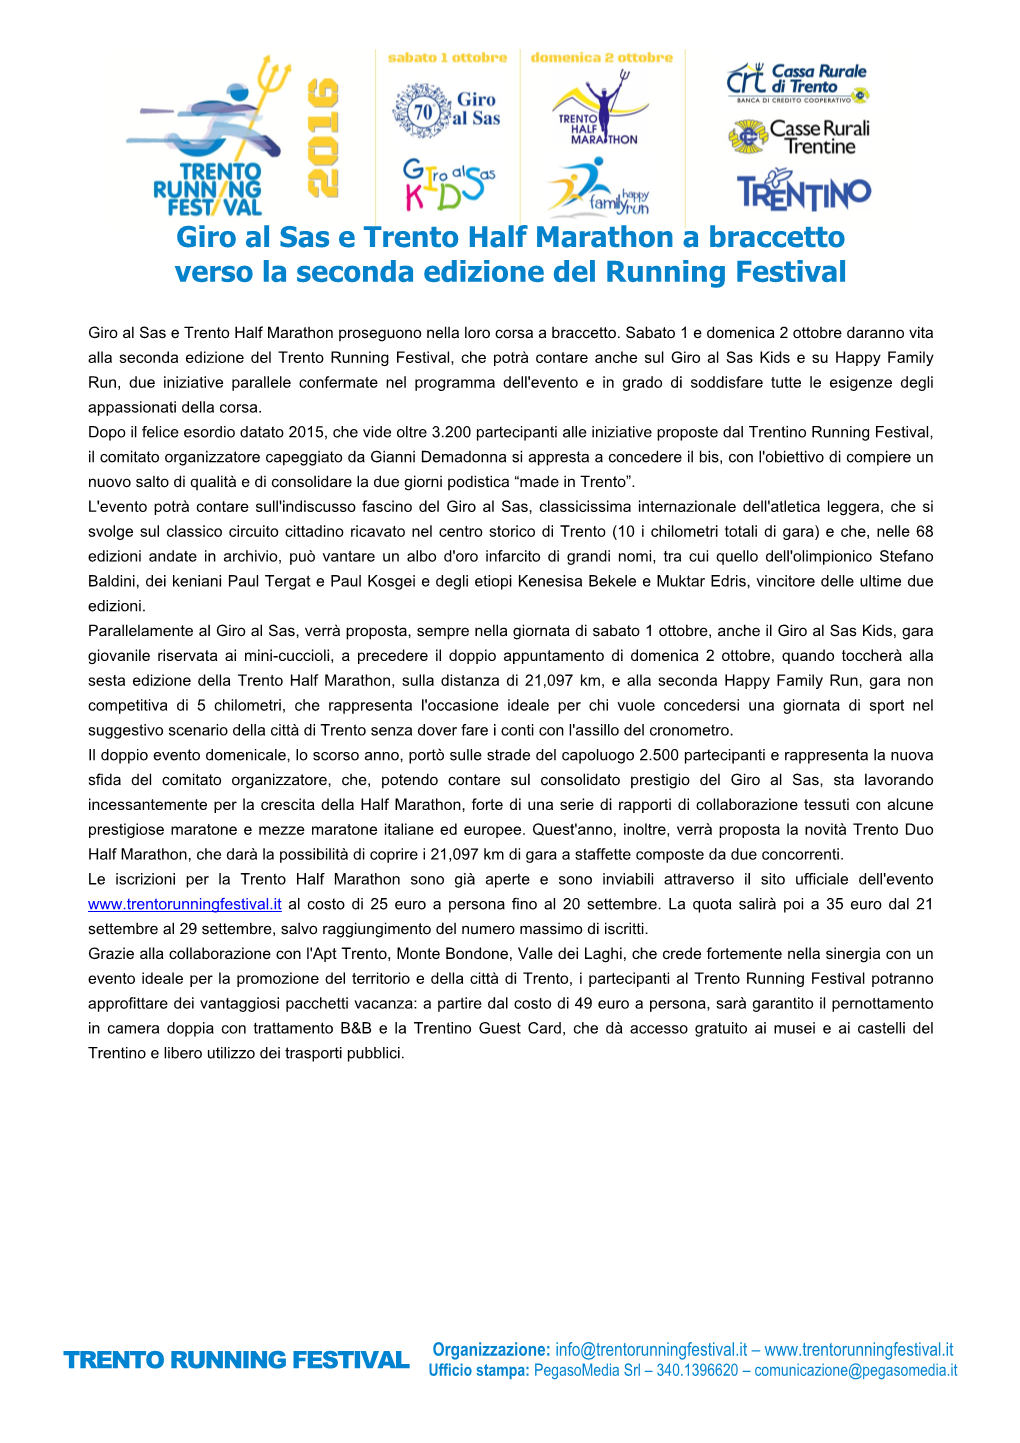 Giro Al Sas E Trento Half Marathon a Braccetto Verso La Seconda Edizione Del Running Festival